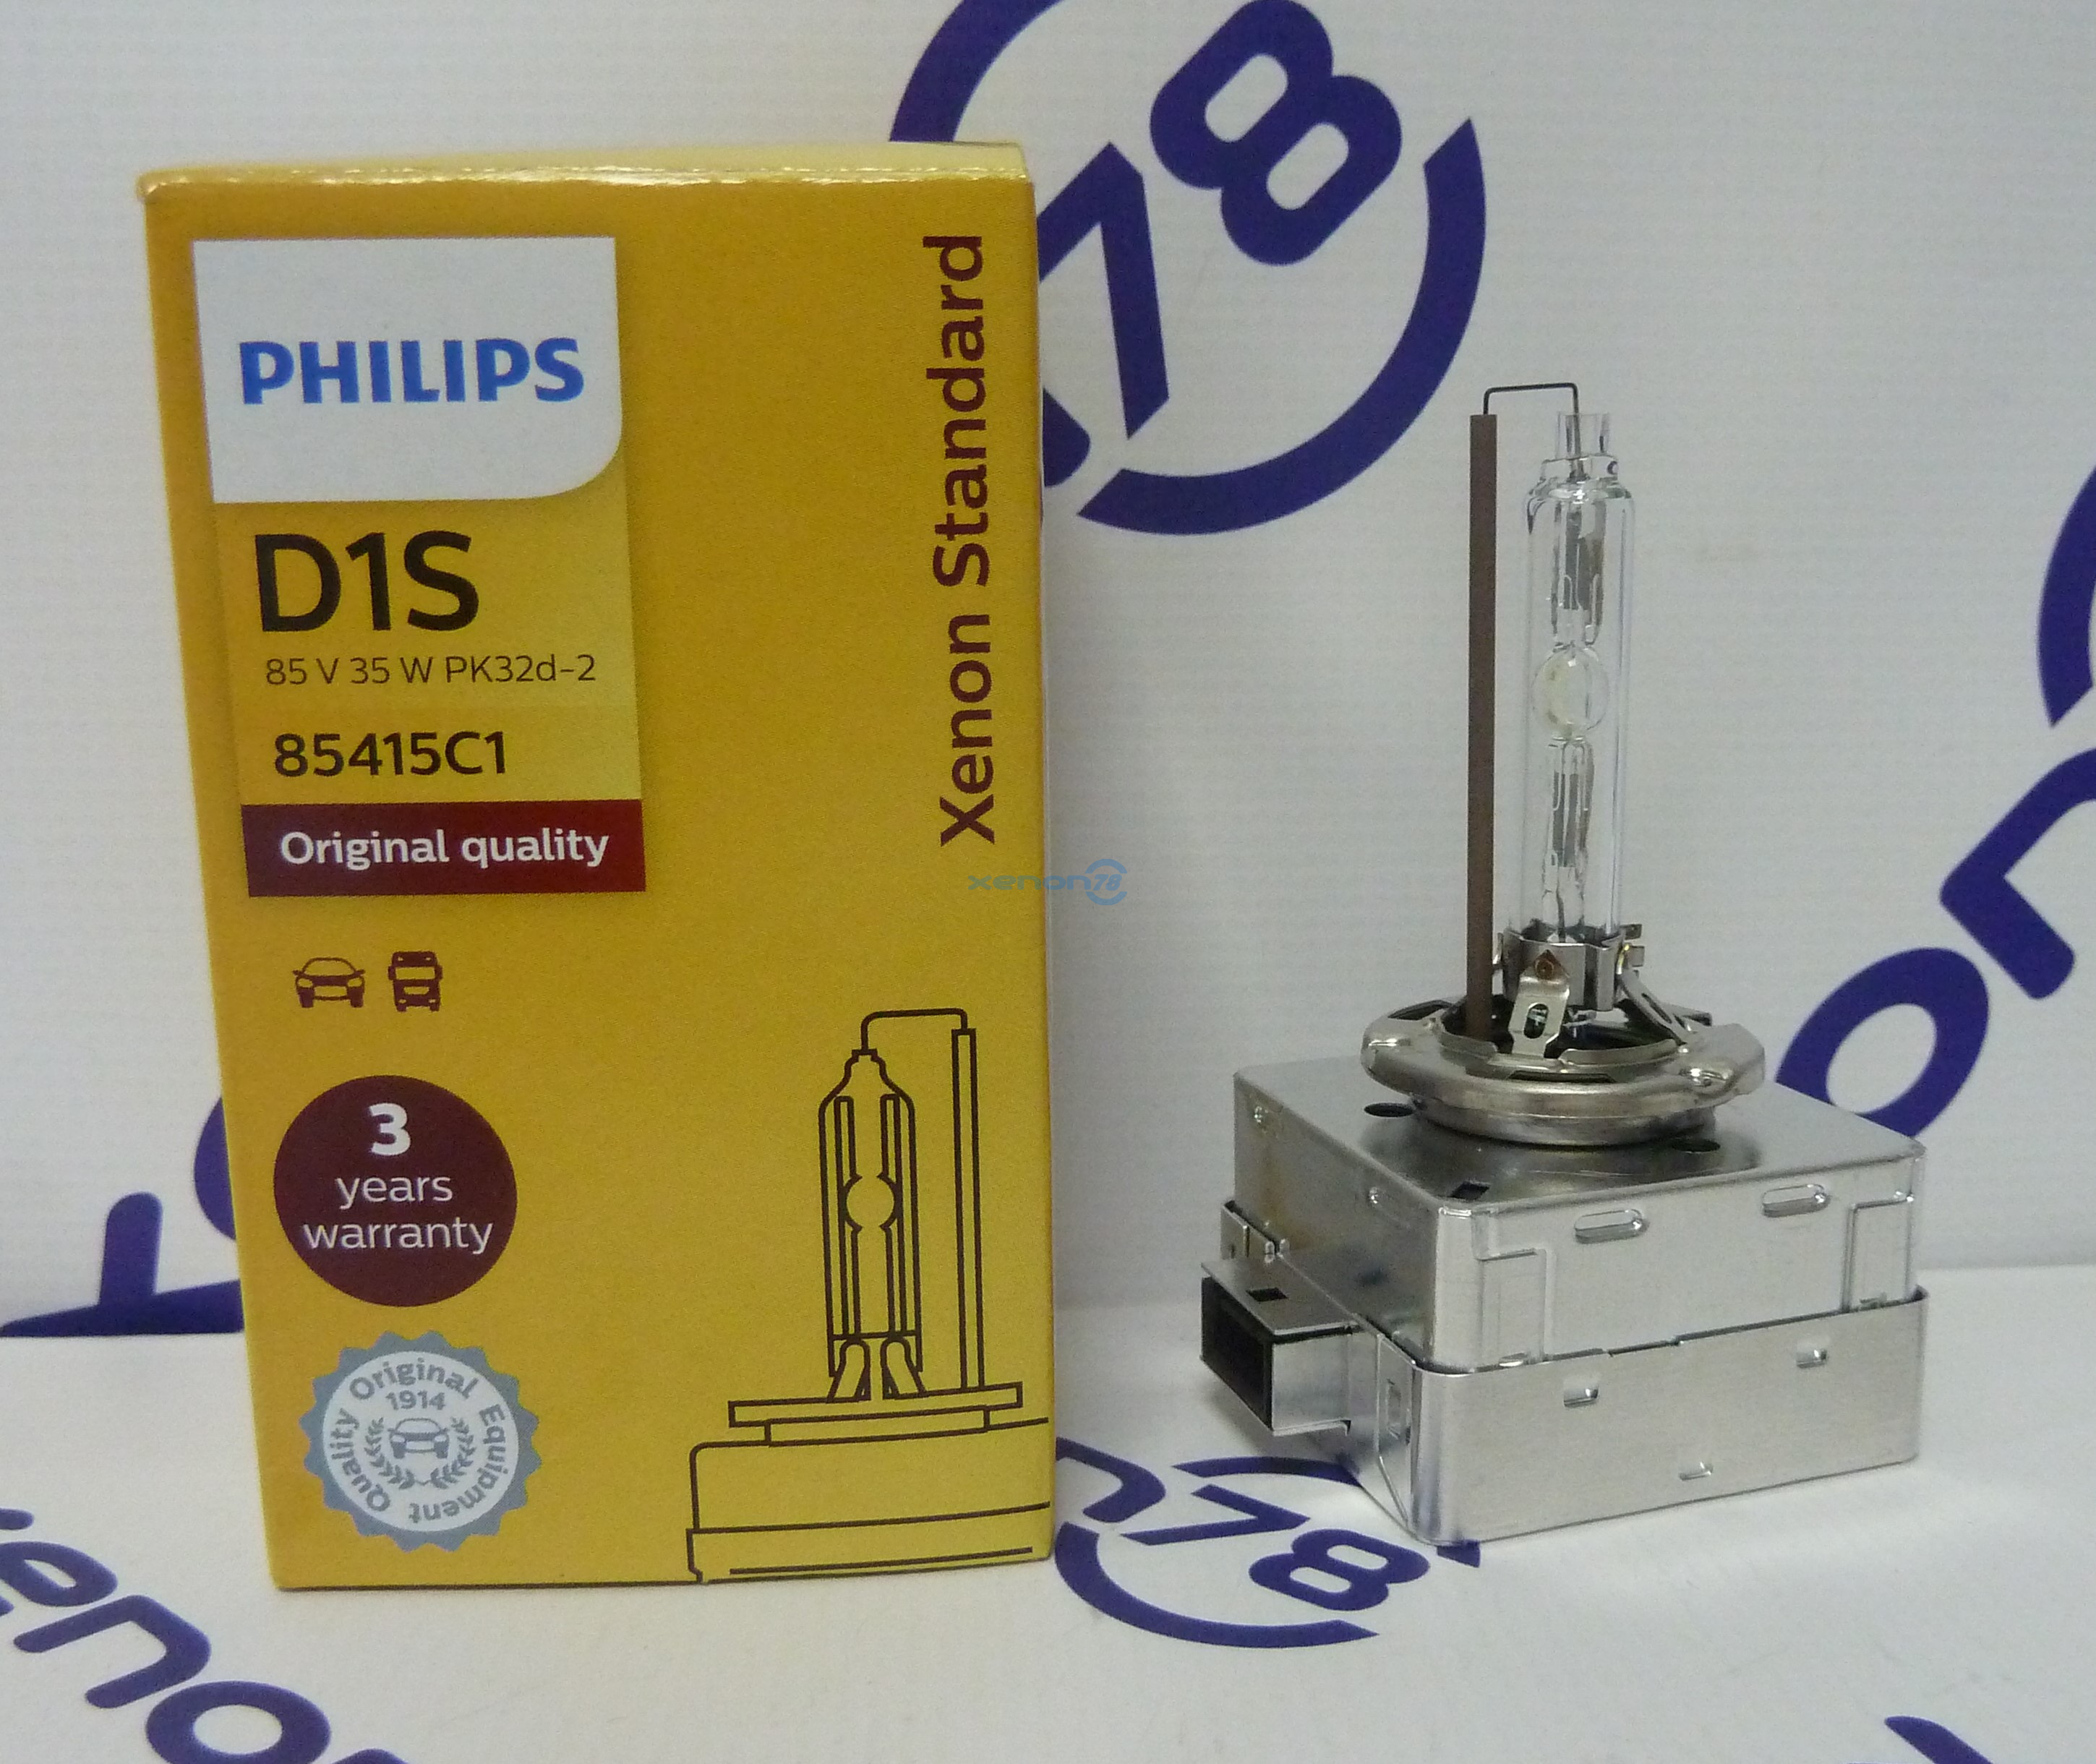 Лампа D1S PHILIPS New 9285 148 294 S (85415C1) 4200К (гарантия 1 год)